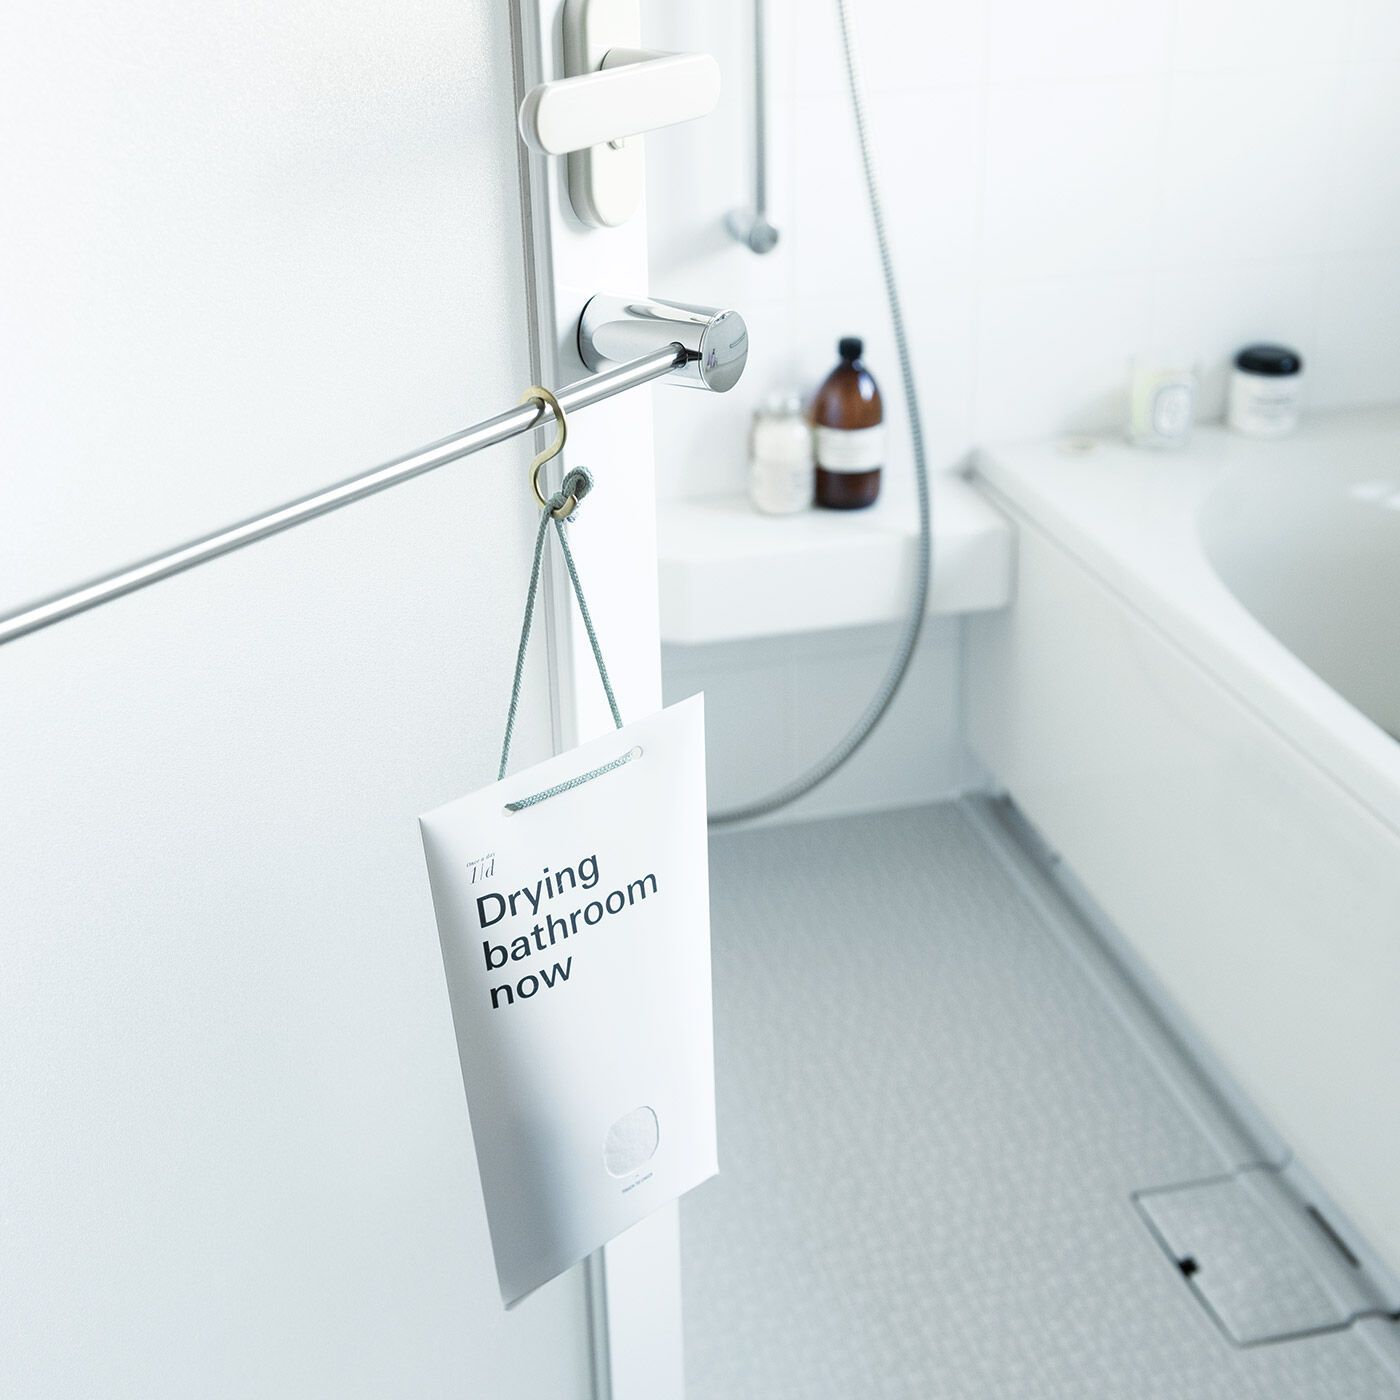 フェリシモの雑貨 Kraso|1/d for Bathroom　浴室用除湿剤の会|［脱衣所］入浴中は脱衣所に引っ掛けて、脱衣スペースの湿気を軽減。